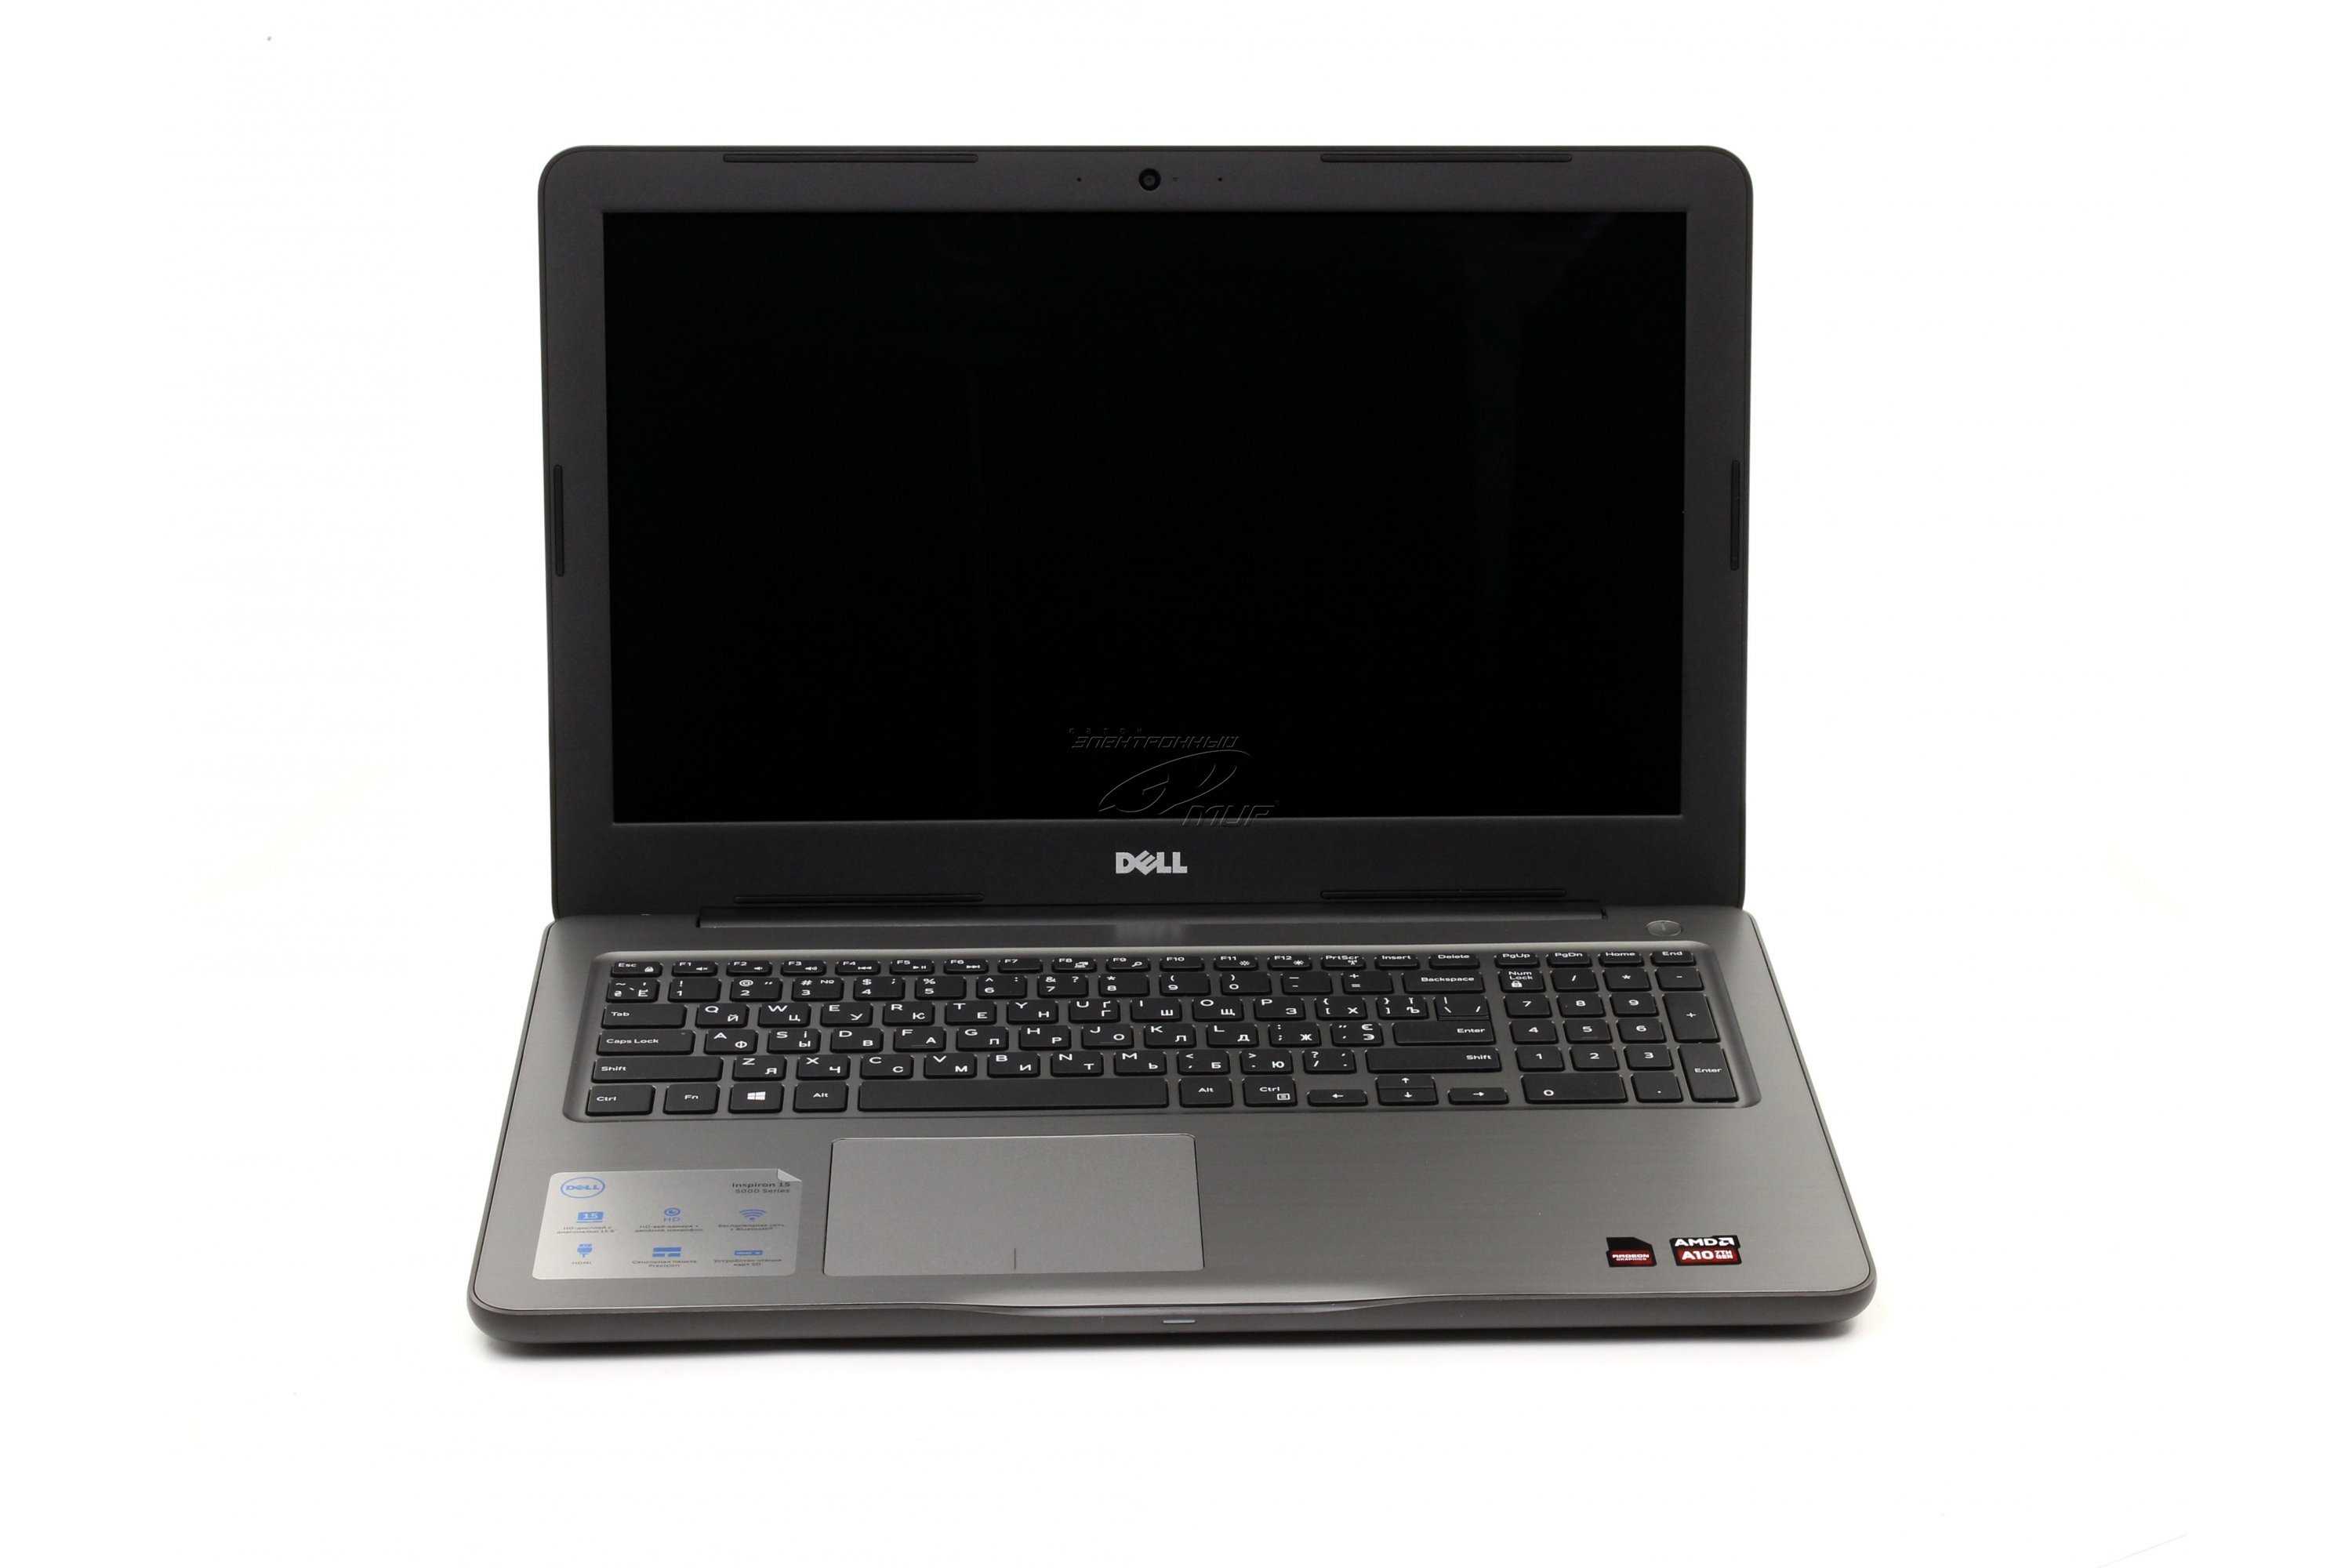 Ноутбук Dell Inspiron 5565 (I55HA10810DDL-FG) - подробные характеристики обзоры видео фото Цены в интернет-магазинах где можно купить ноутбук Dell Inspiron 5565 (I55HA10810DDL-FG)